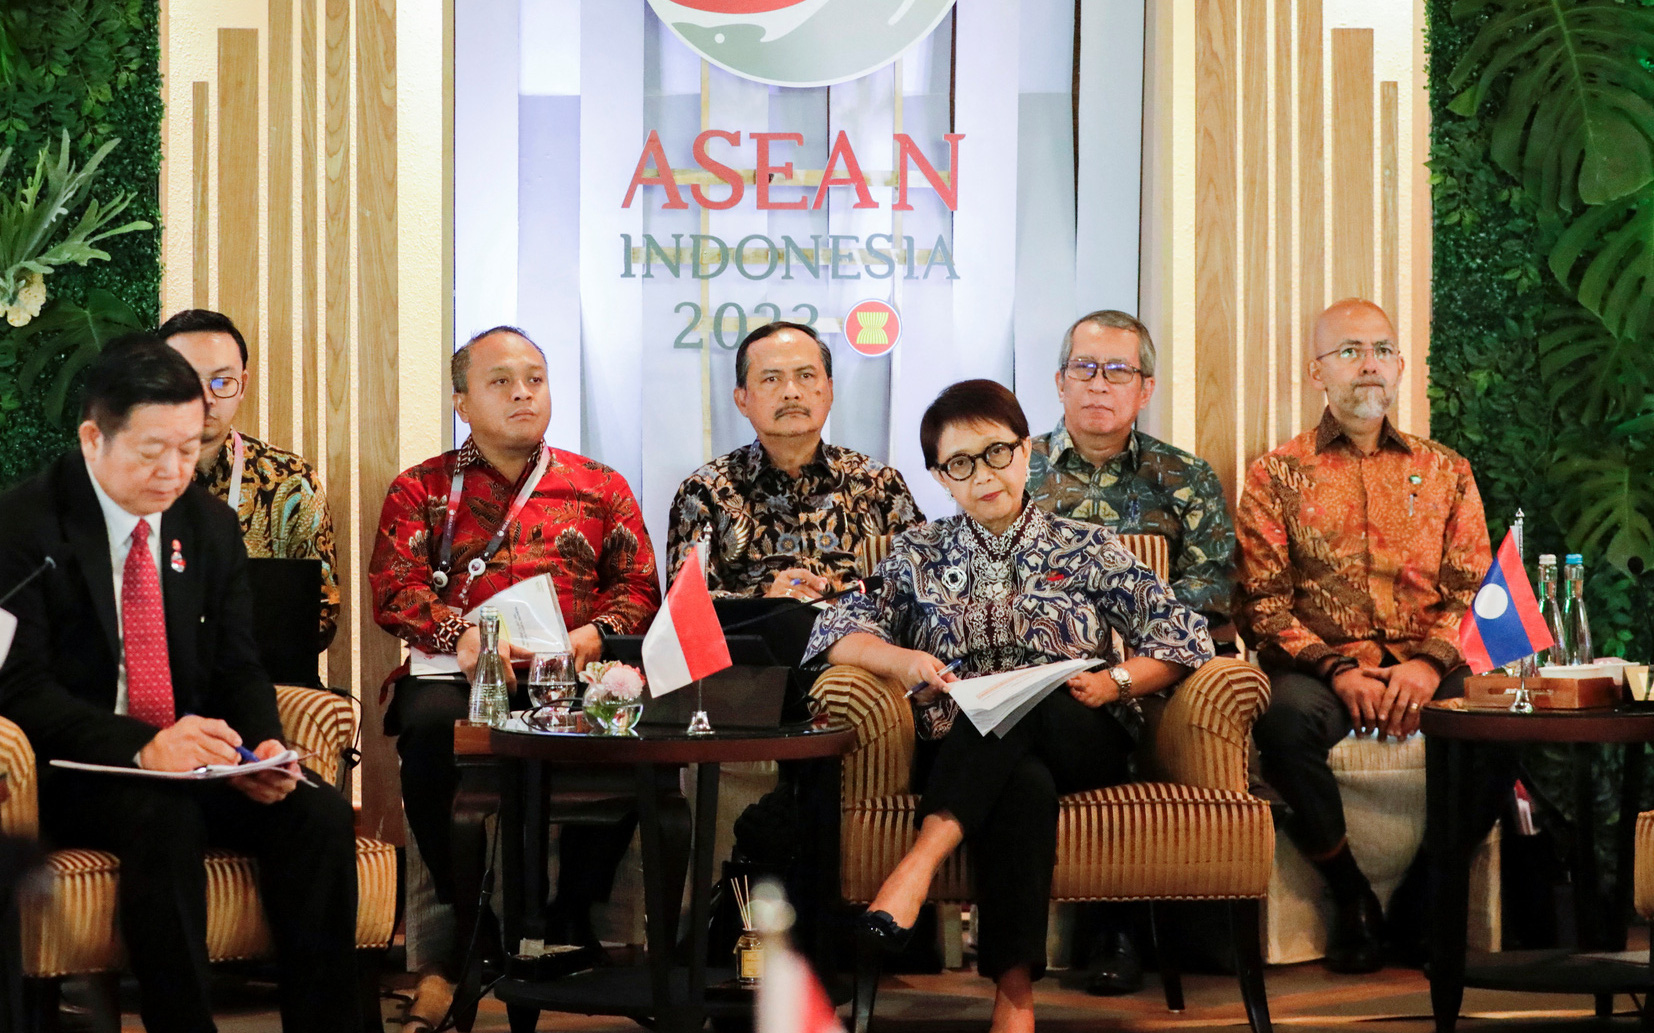 Các ngoại trưởng ASEAN nhấn mạnh thượng tôn pháp luật ở Biển Đông